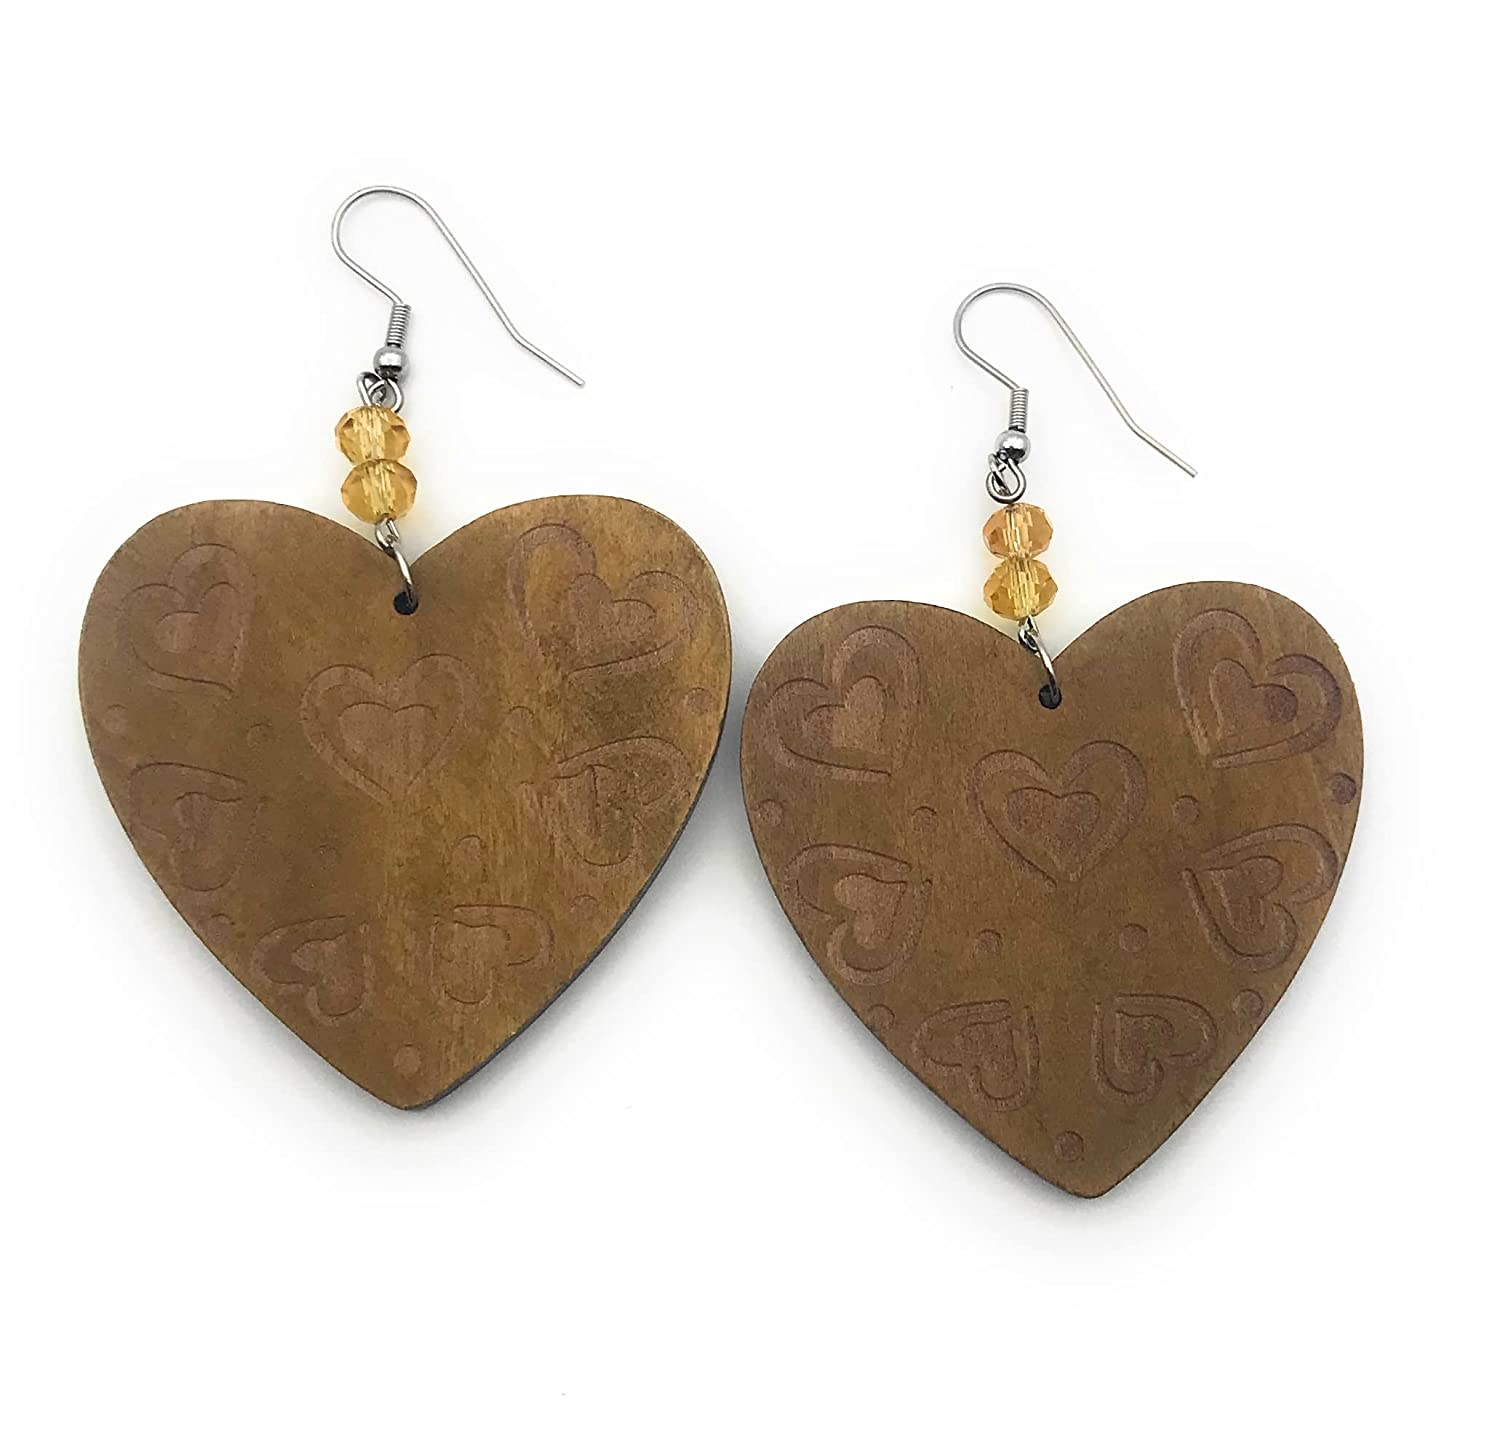 Wood Heart Swirl Pattern Earrings Side by Side from Scott D Jewelry Designs